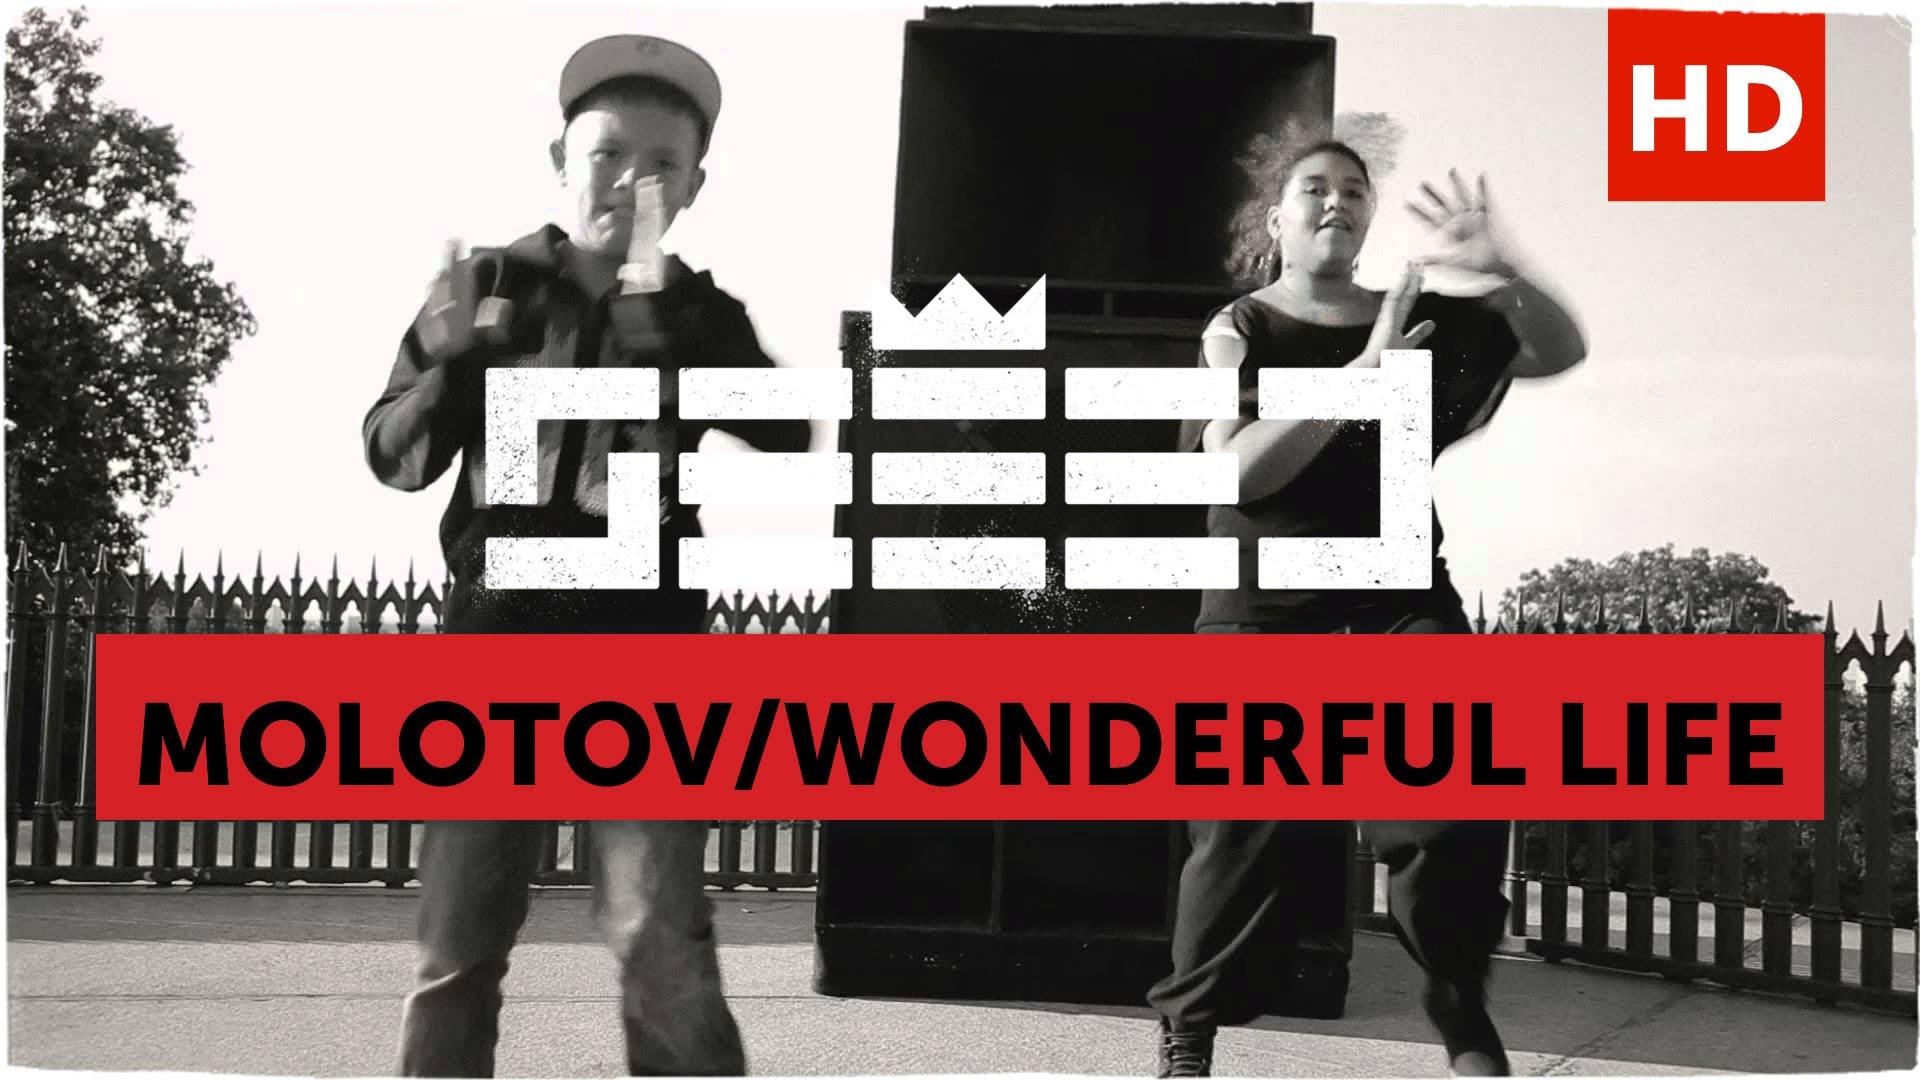 Seeed - Molotov / Wonderful Life [9/7/2011]